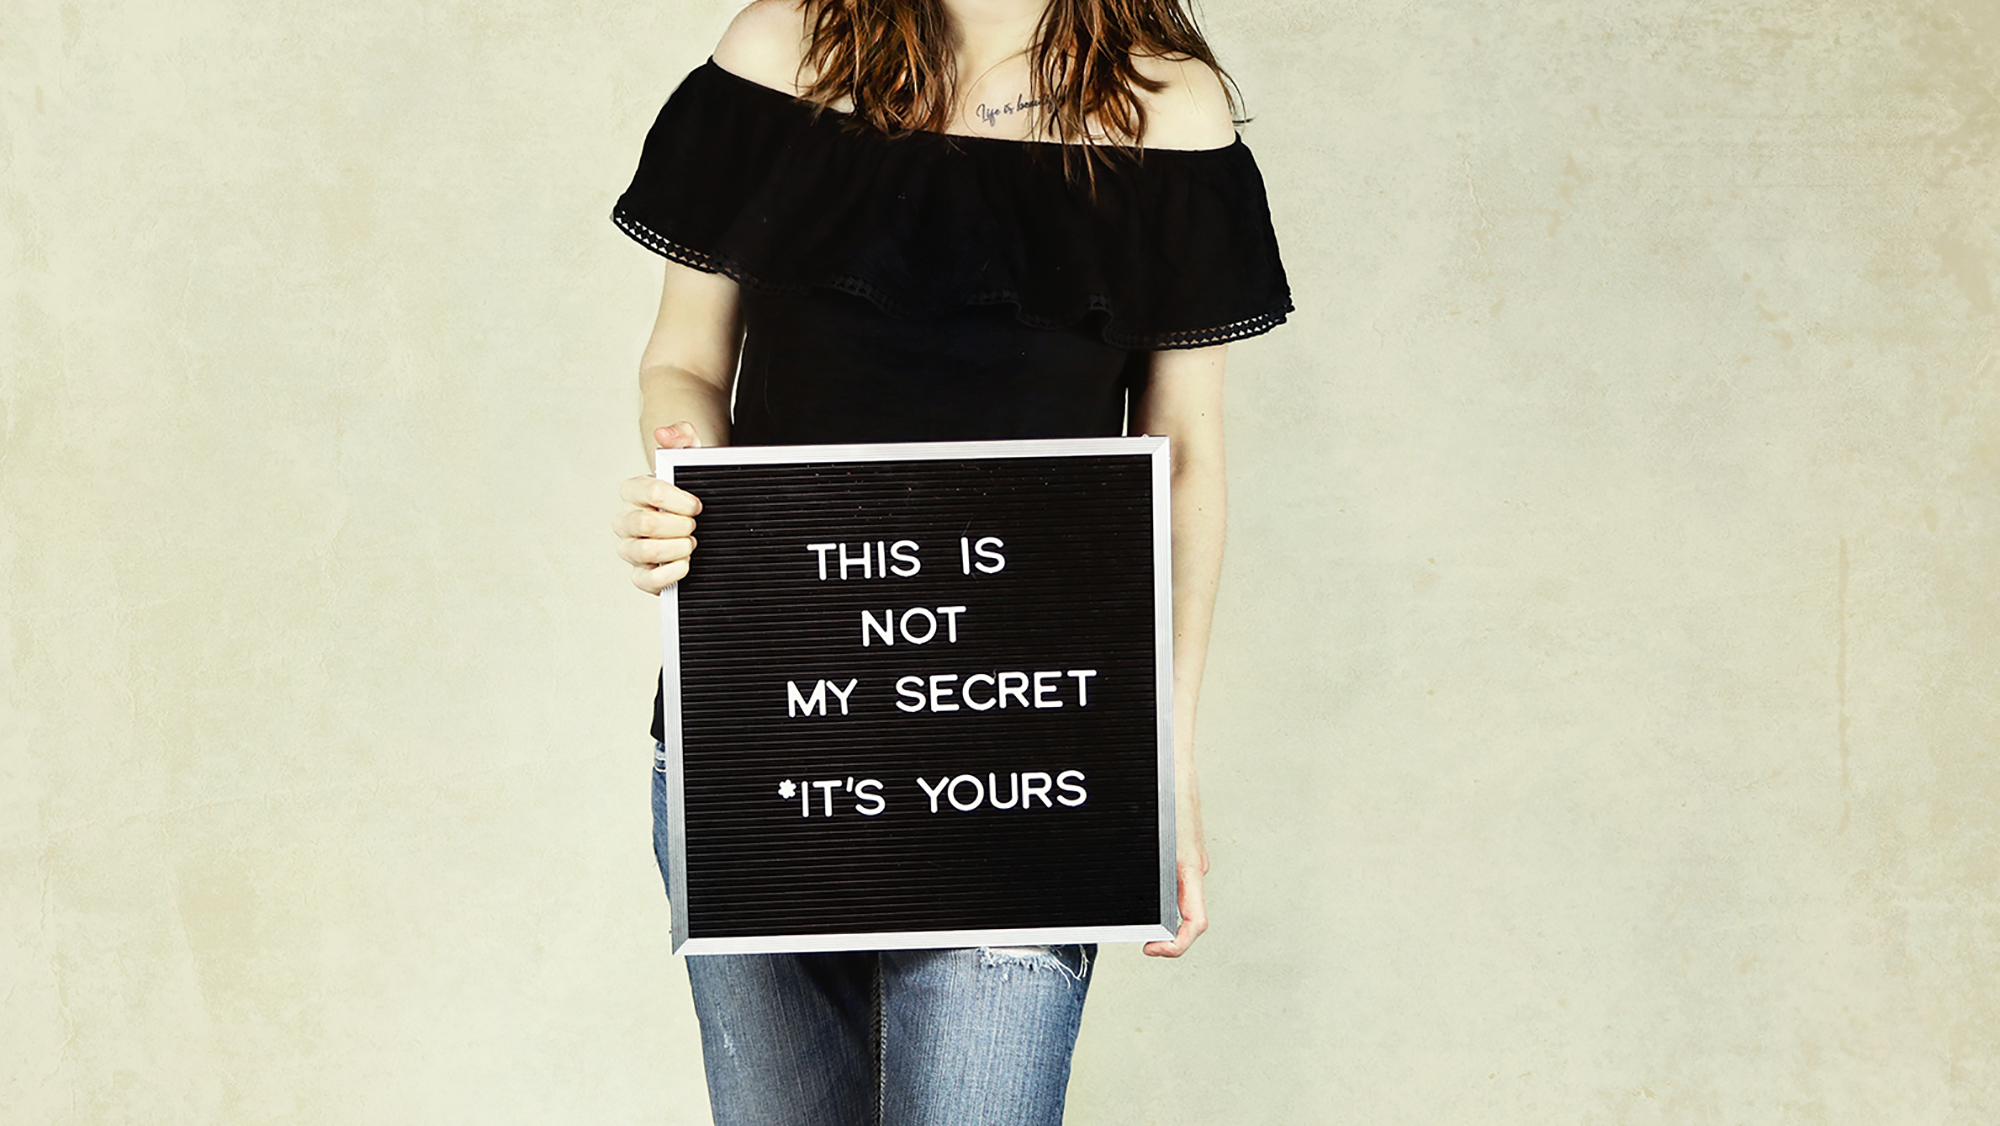 Mädchen hält Schild mit Aufschrift "this is not my secret it